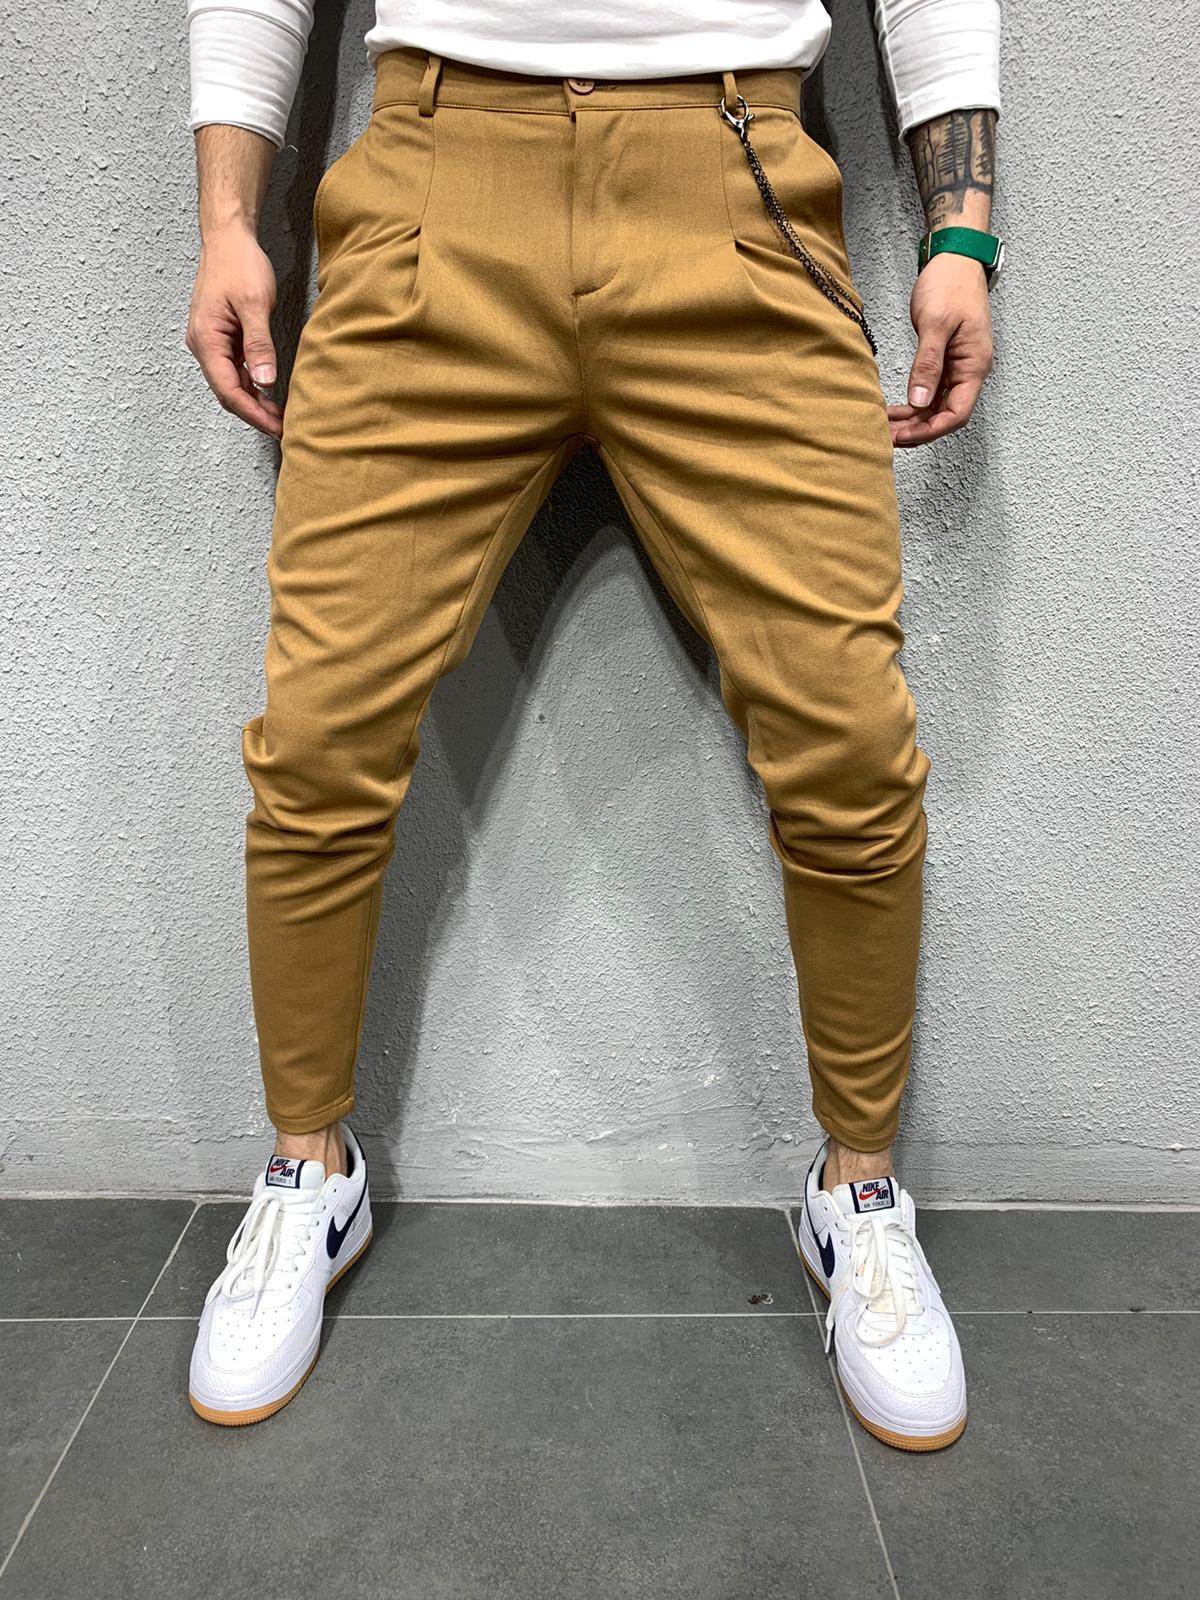 Men's pants joggers - brown P908 | MODONE wholesale - Clothing For Men